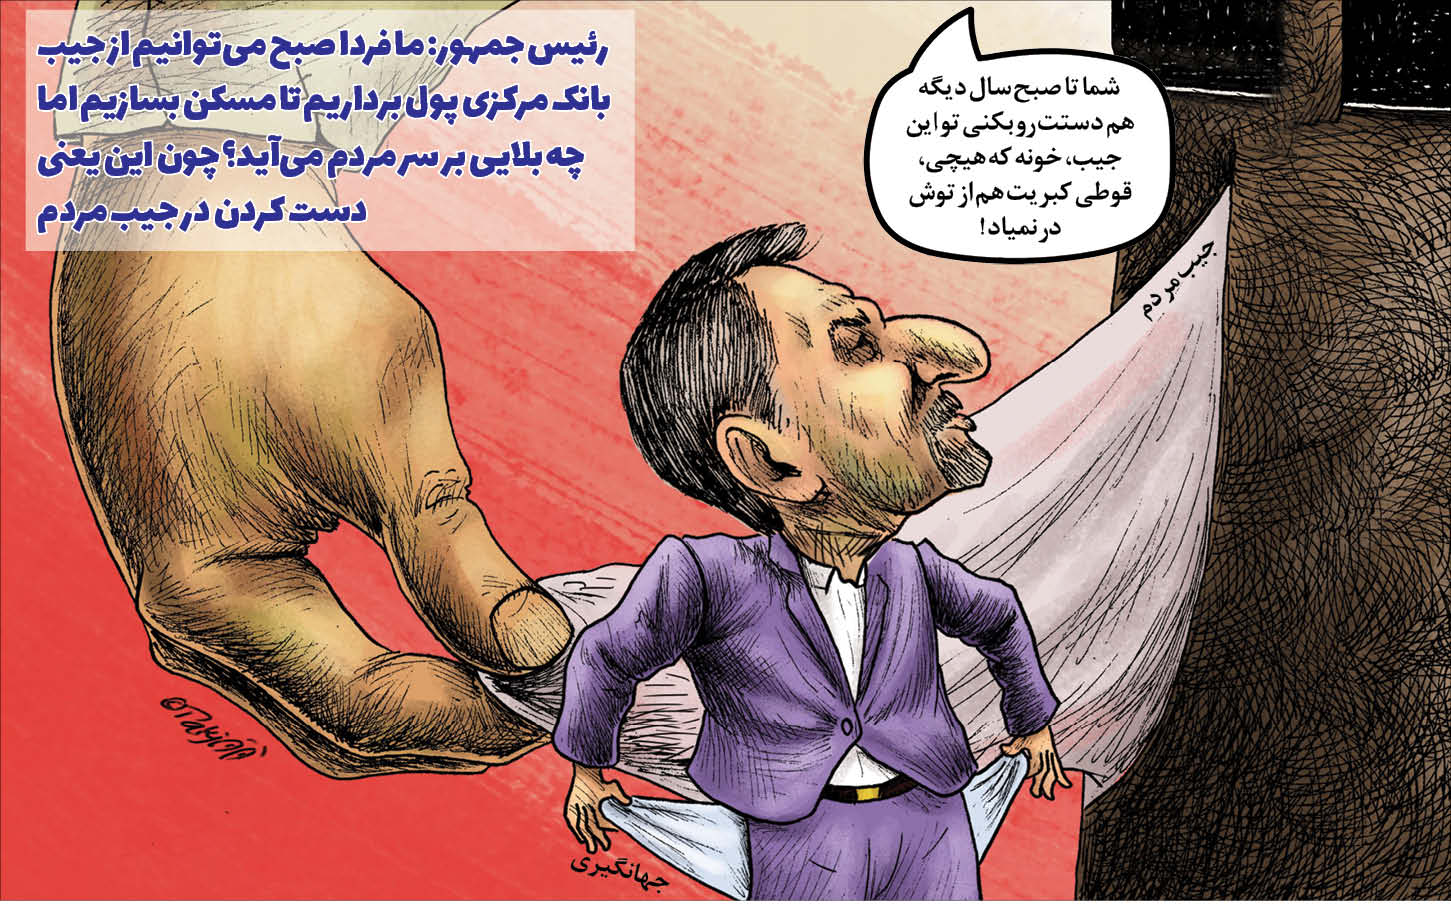 کارتونیست: جواد تکجو